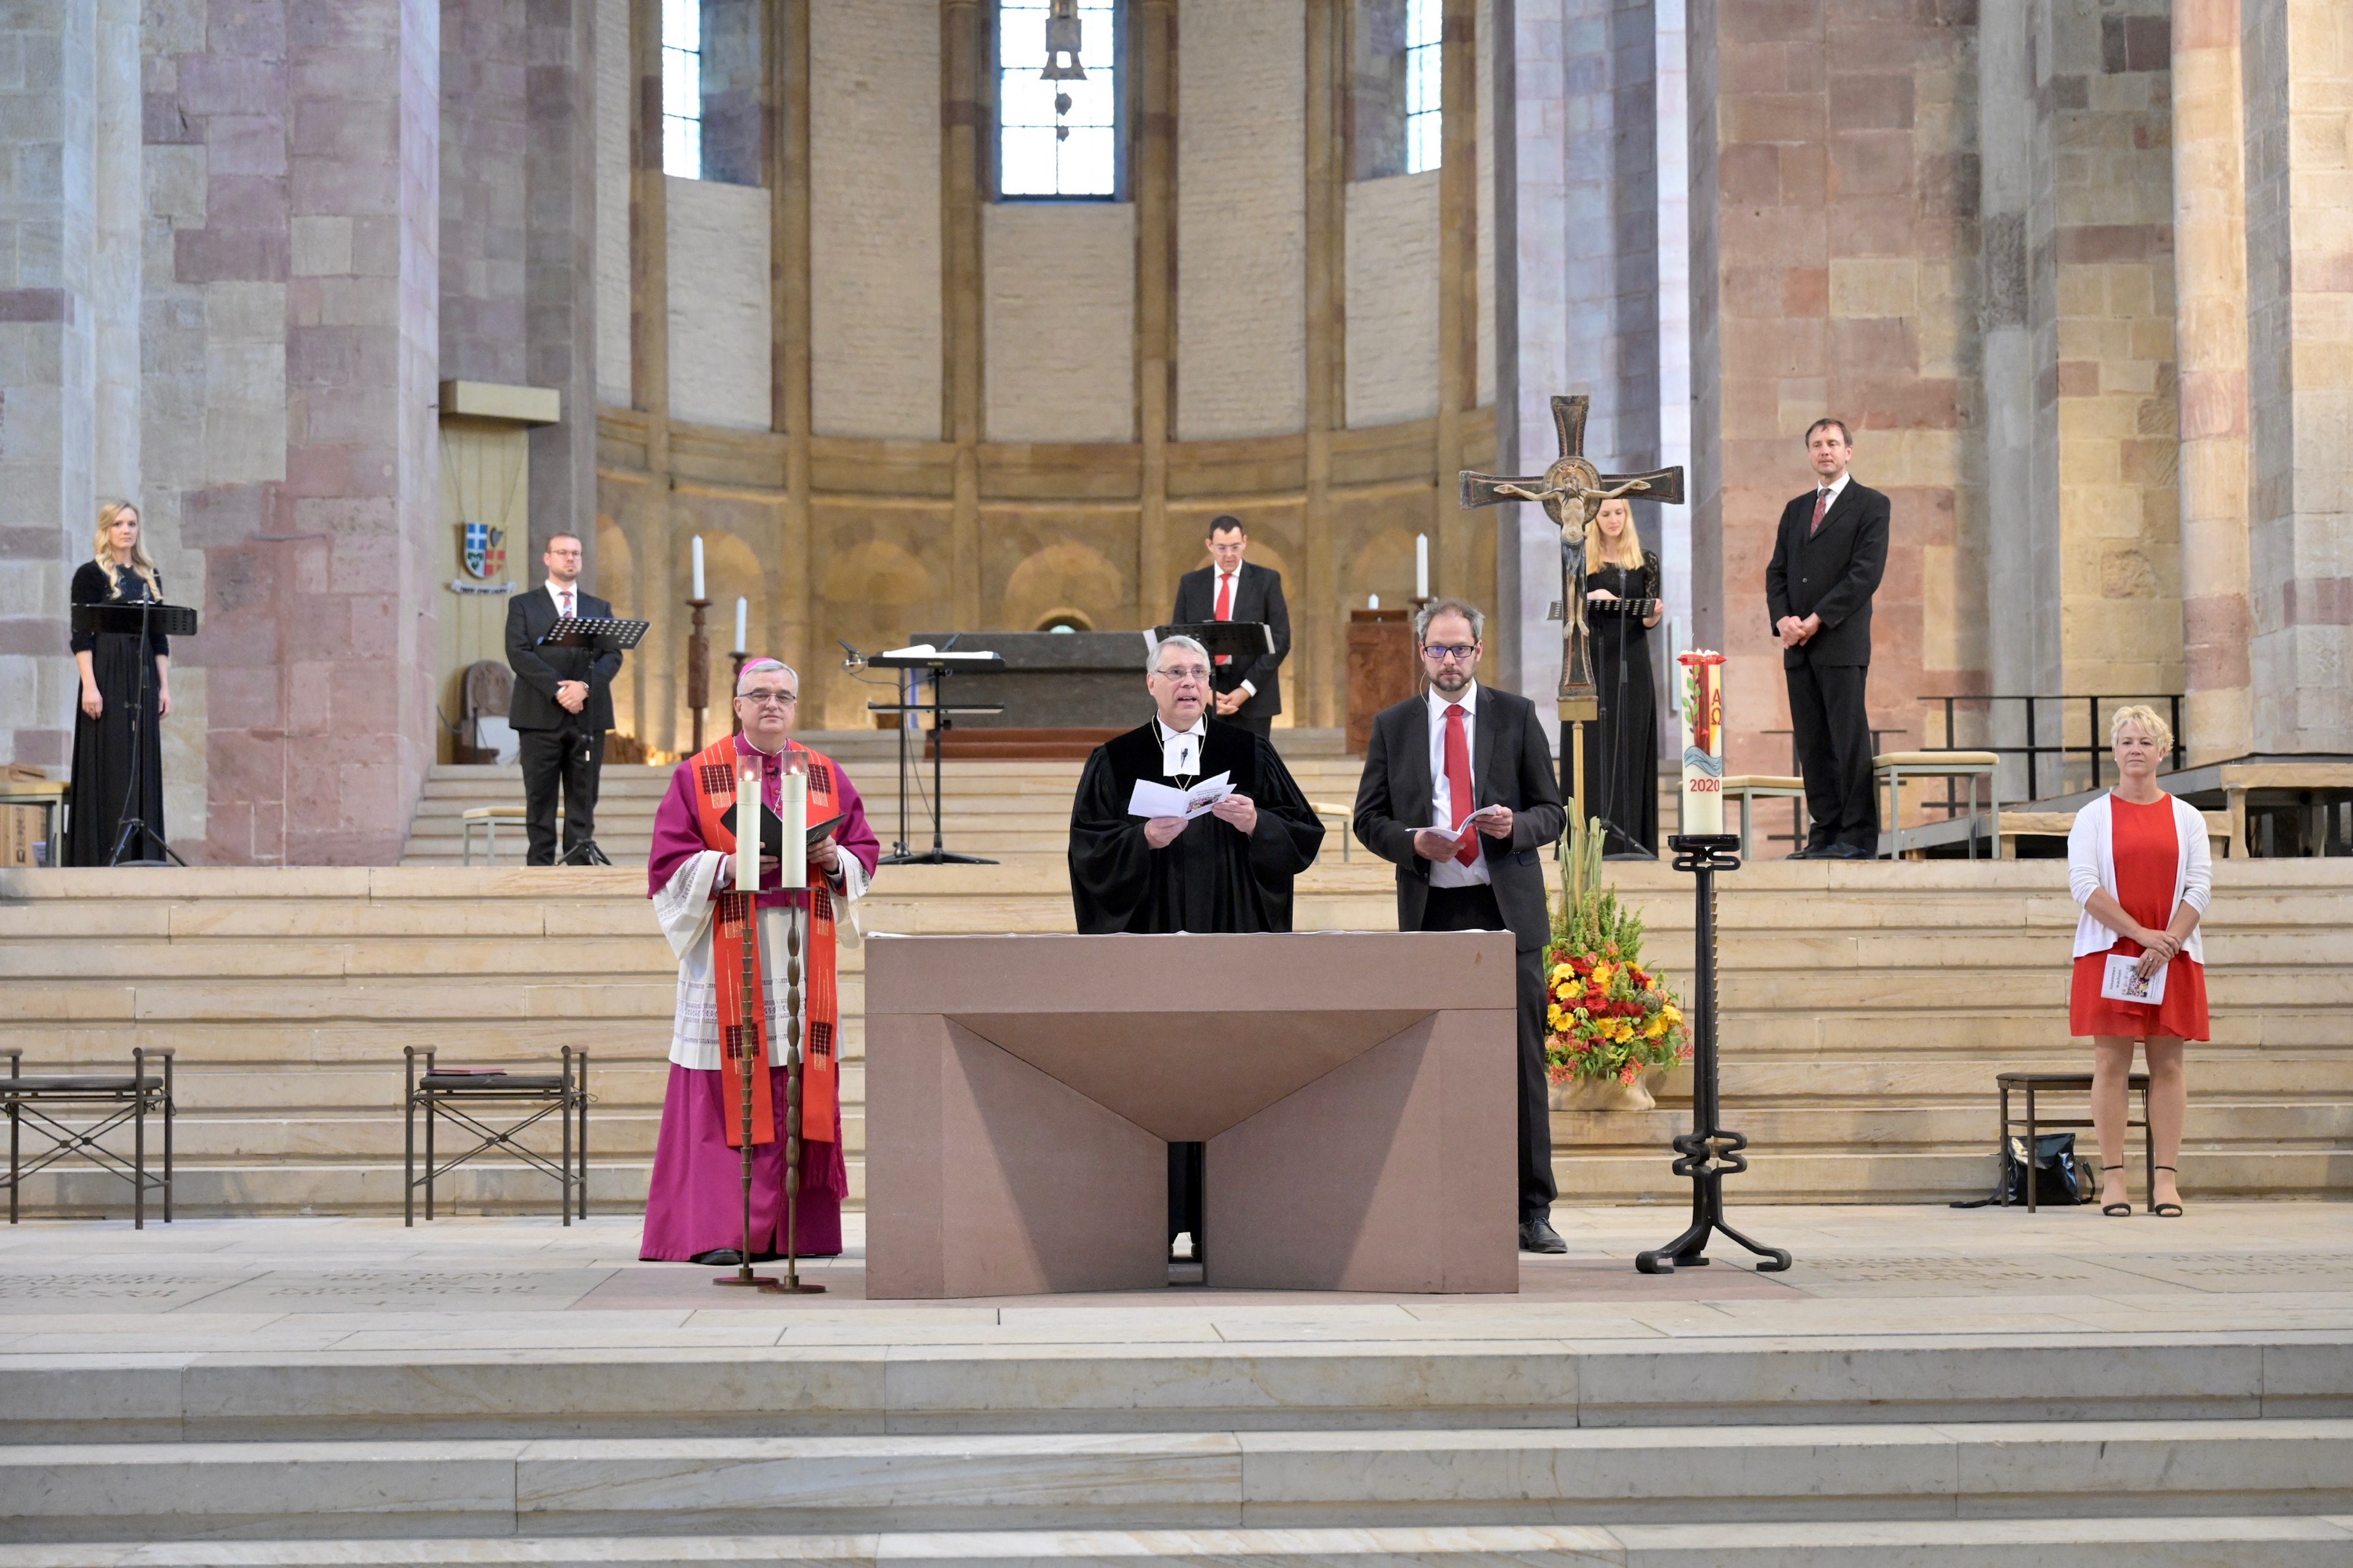 Bischof Wiesemann, Kirchenpräsident Schad, Pastor Wagner und Anja Bein mit dem Vokalensemble im Hintergrund. Foto: lk/Landry